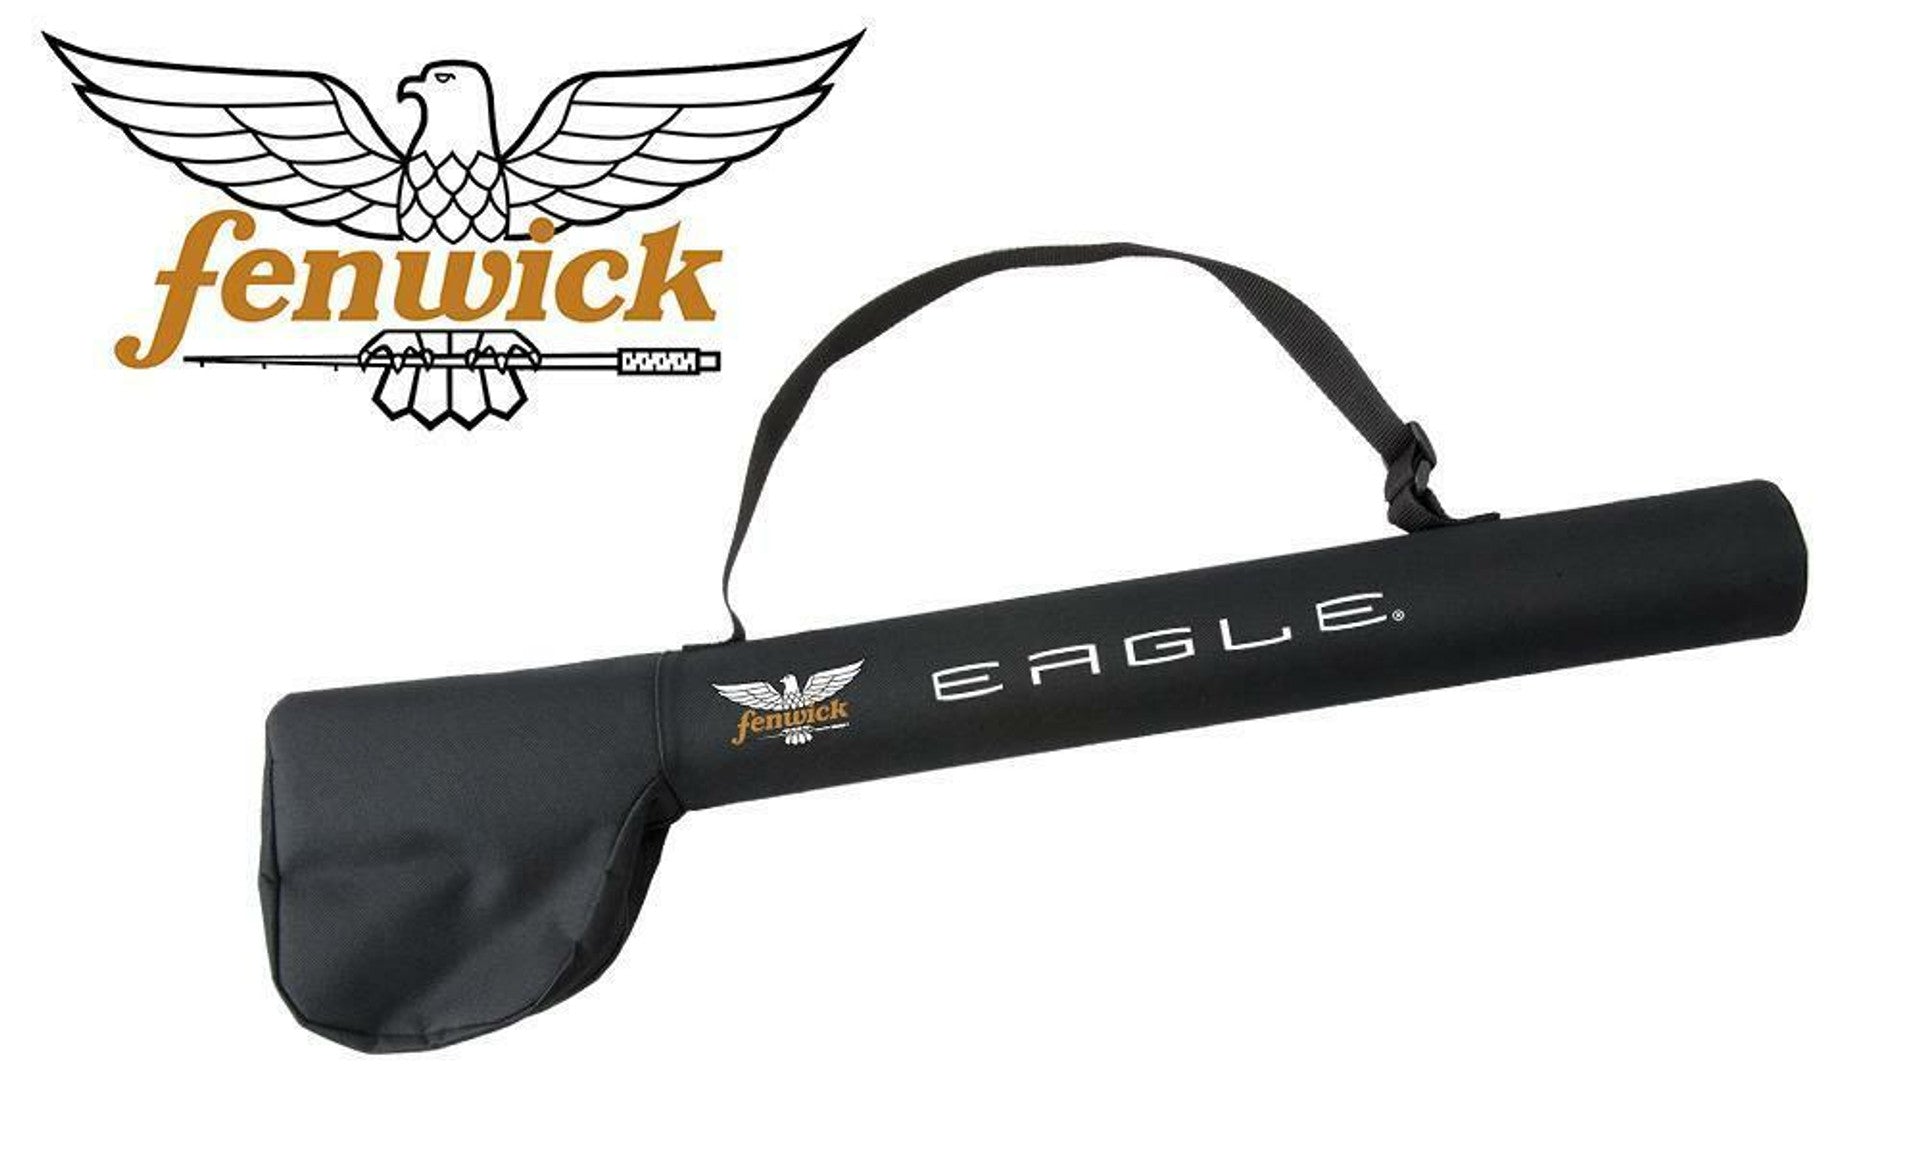 FENWICK - EAGLE EA 9' 4PC FLY RODS